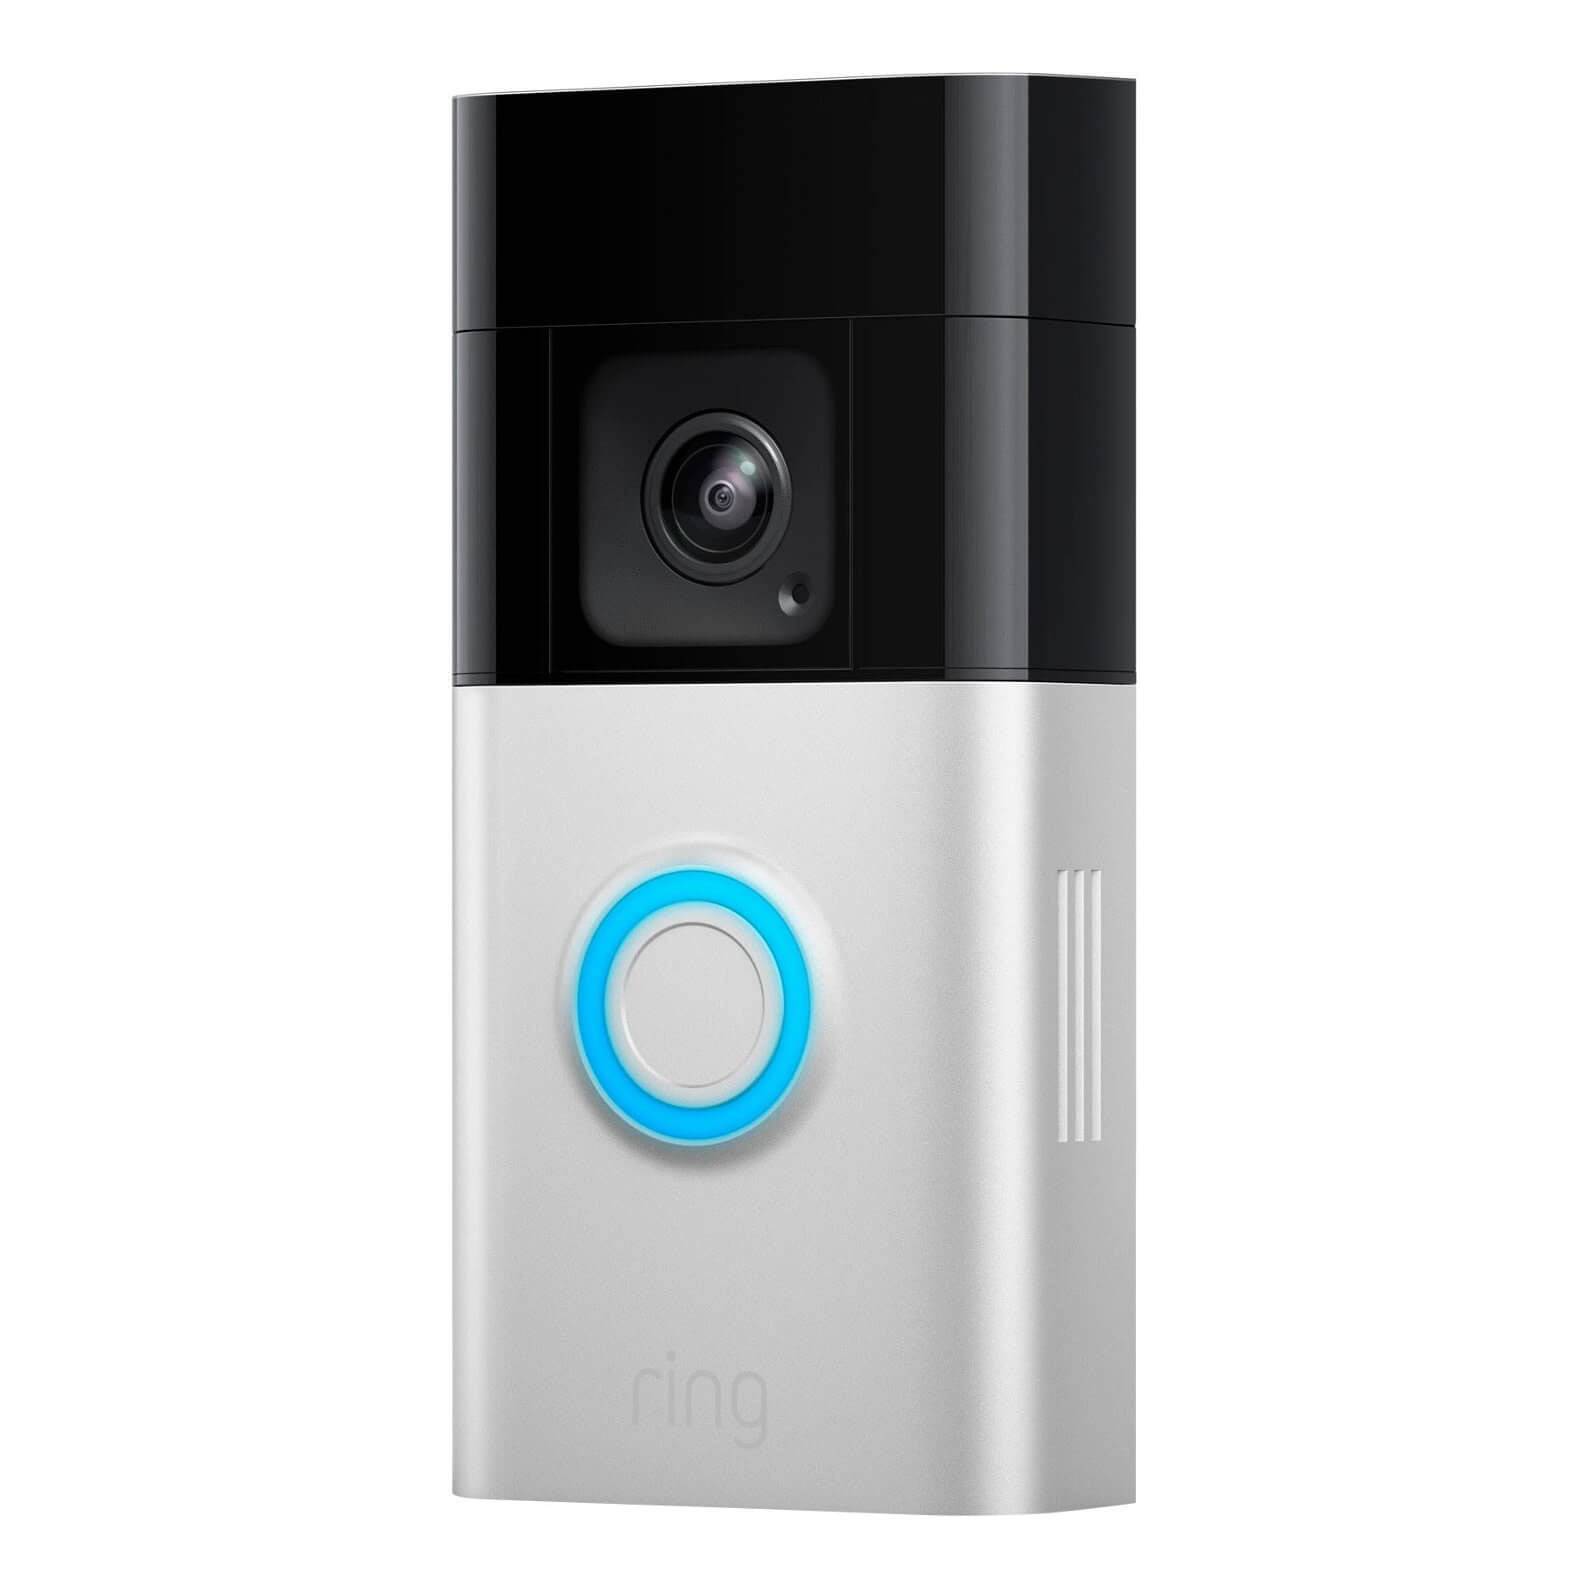 Ring Battery Doorbell Pro - Smart Video Doorbell – Canal Alarm